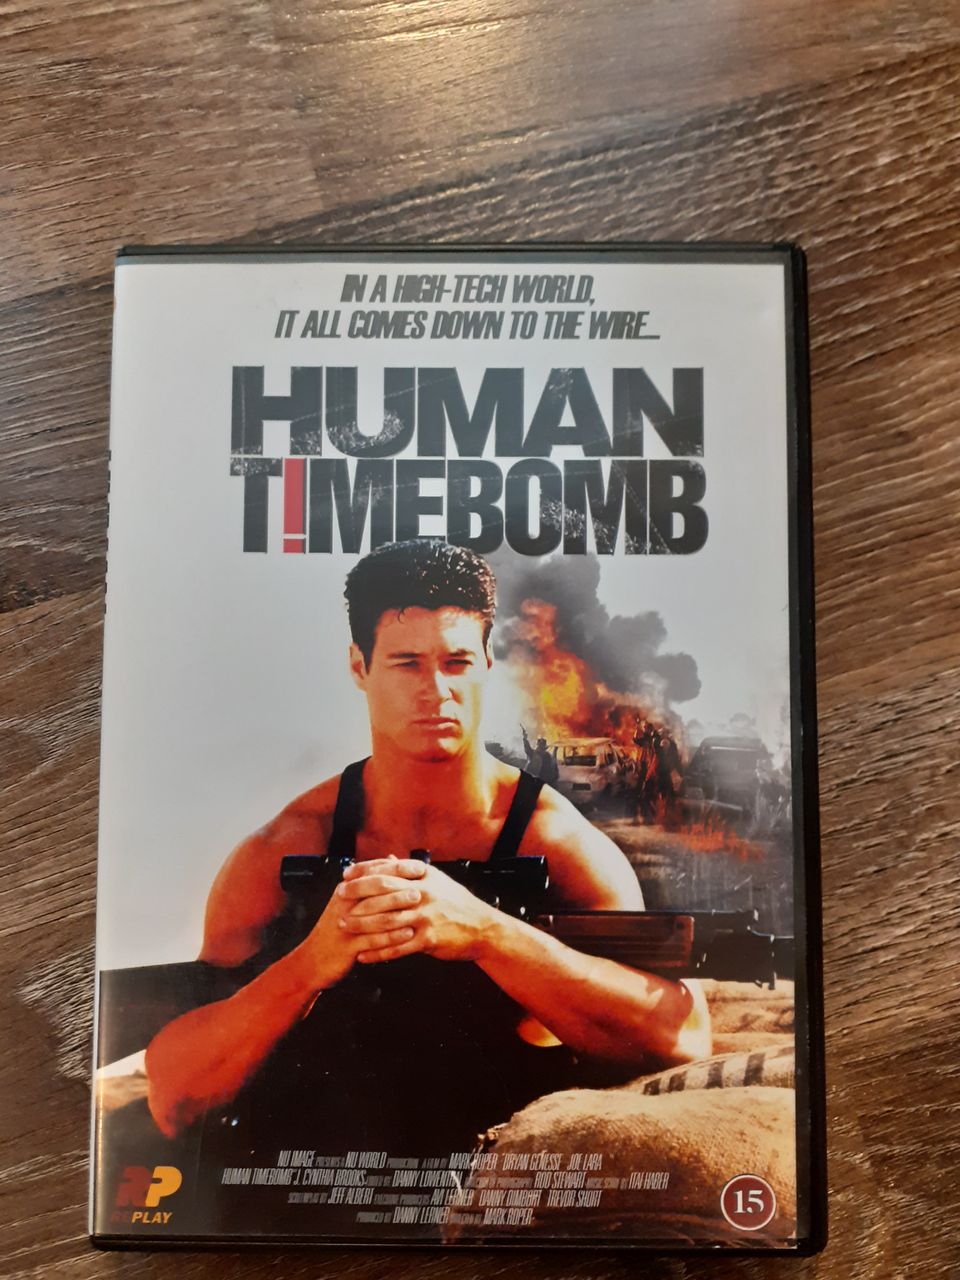 Human timebomb